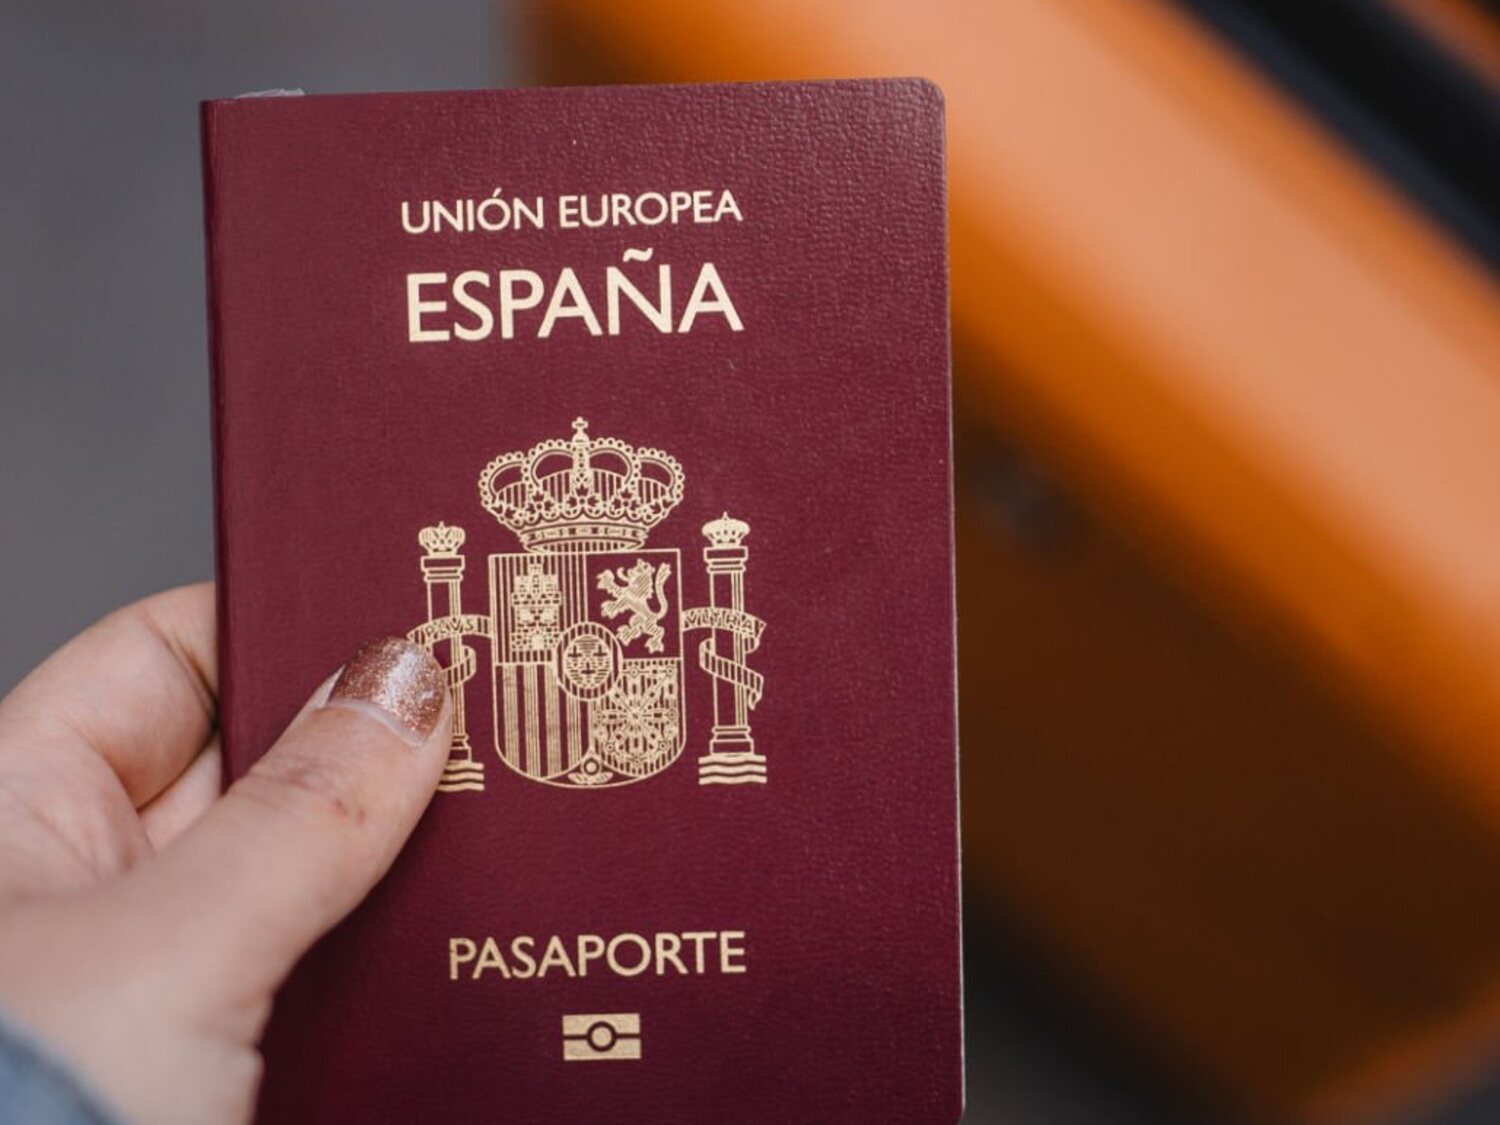 Cuidado con el pasaporte: la confusa tipografía que podría dejarte en tierra